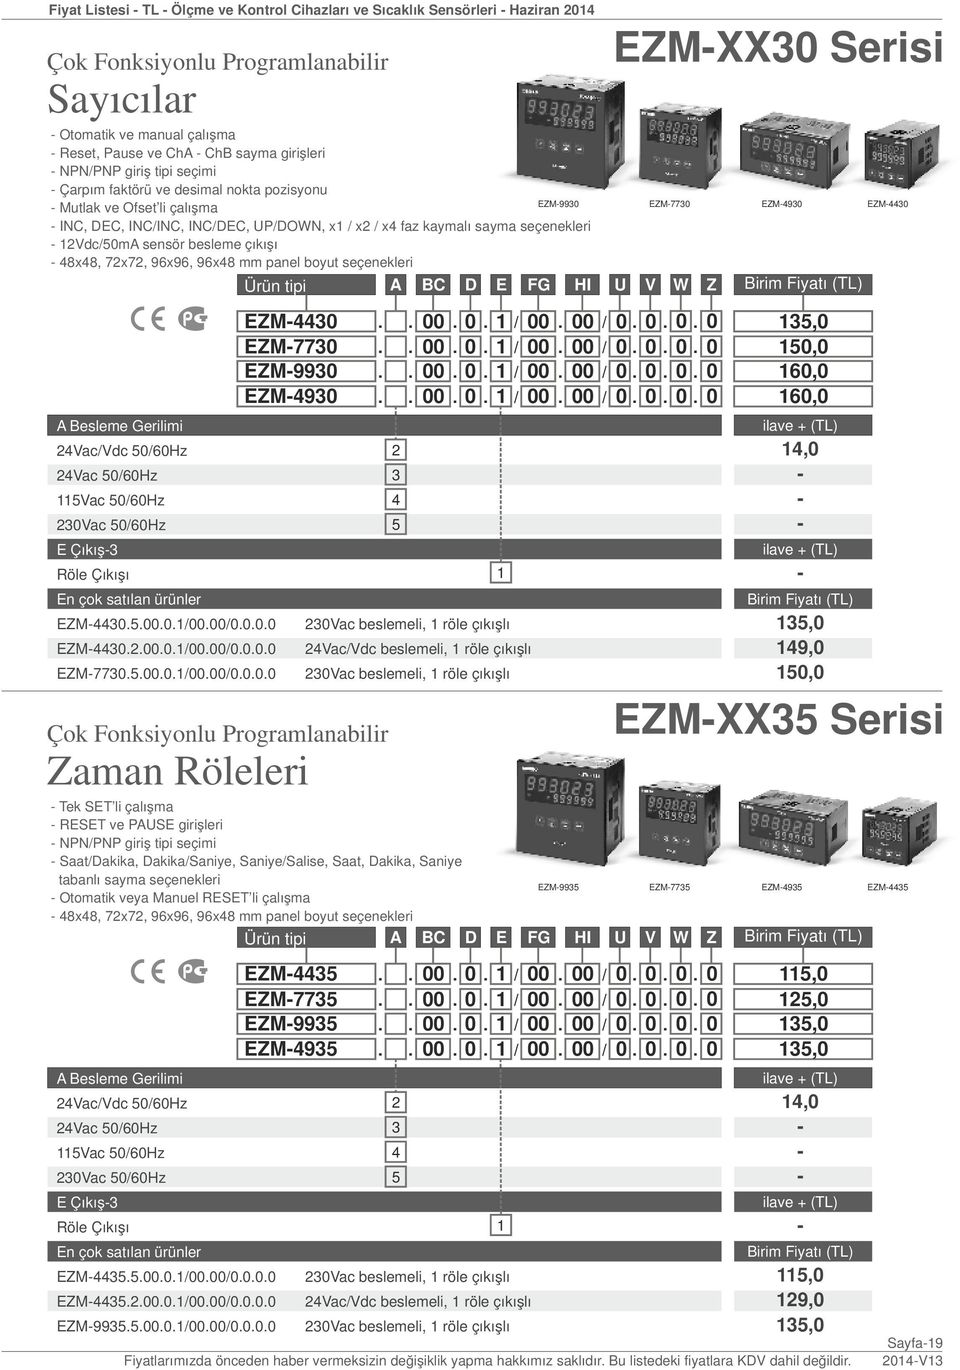 7x7, 96x96, 96x8 mm panel boyut seçenekleri Ürün tipi. A. BC. D. E / FG. HI / U. V. W. Z Vac/Vdc 50/60Hz Vac 50/60Hz 5Vac 50/60Hz 30Vac 50/60Hz E Çıkış3 Röle Çıkışı En çok satılan ürünler EZM30.5.00.